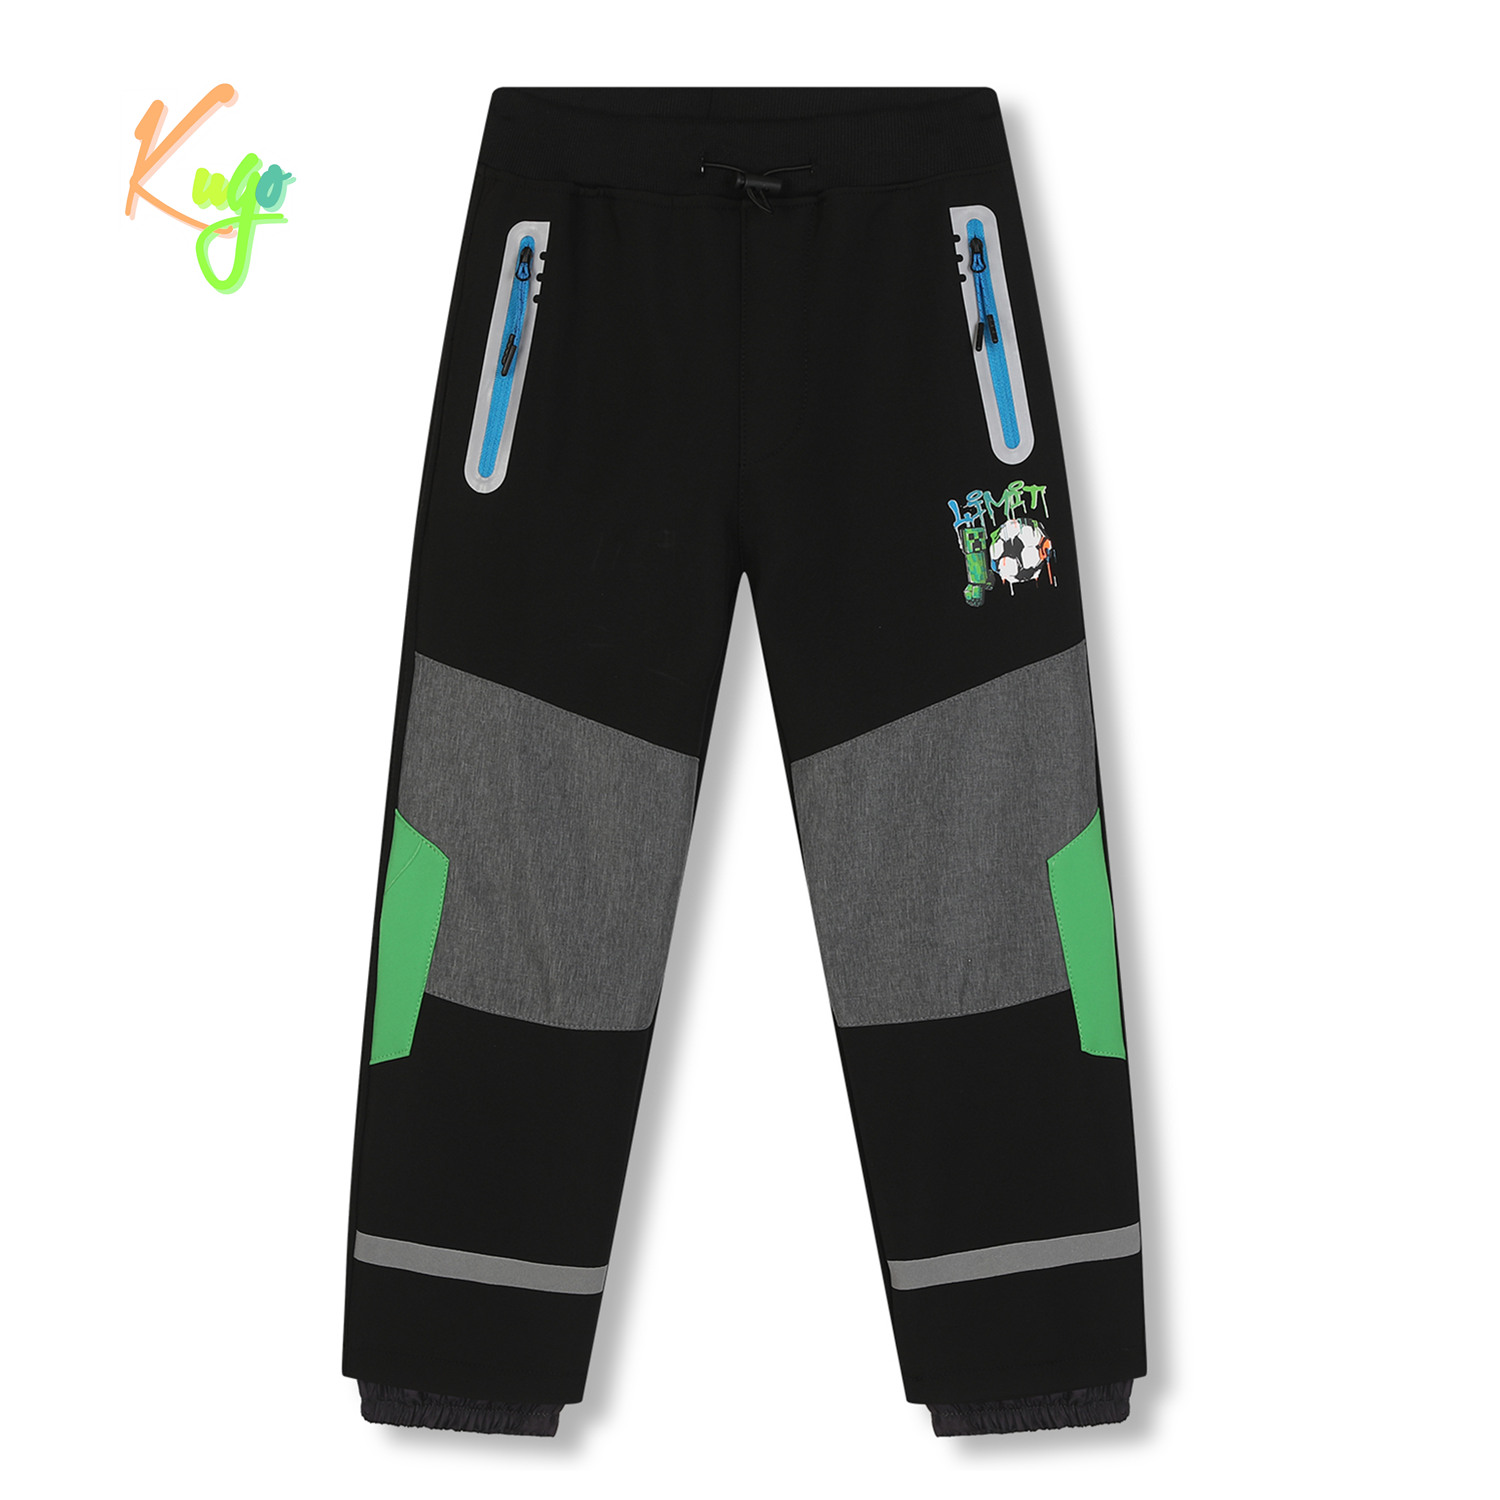 Chlapecké softshellové kalhoty, zateplené - KUGO HK5609, černá / tyrkysové zipy Barva: Černá, Velikost: 110